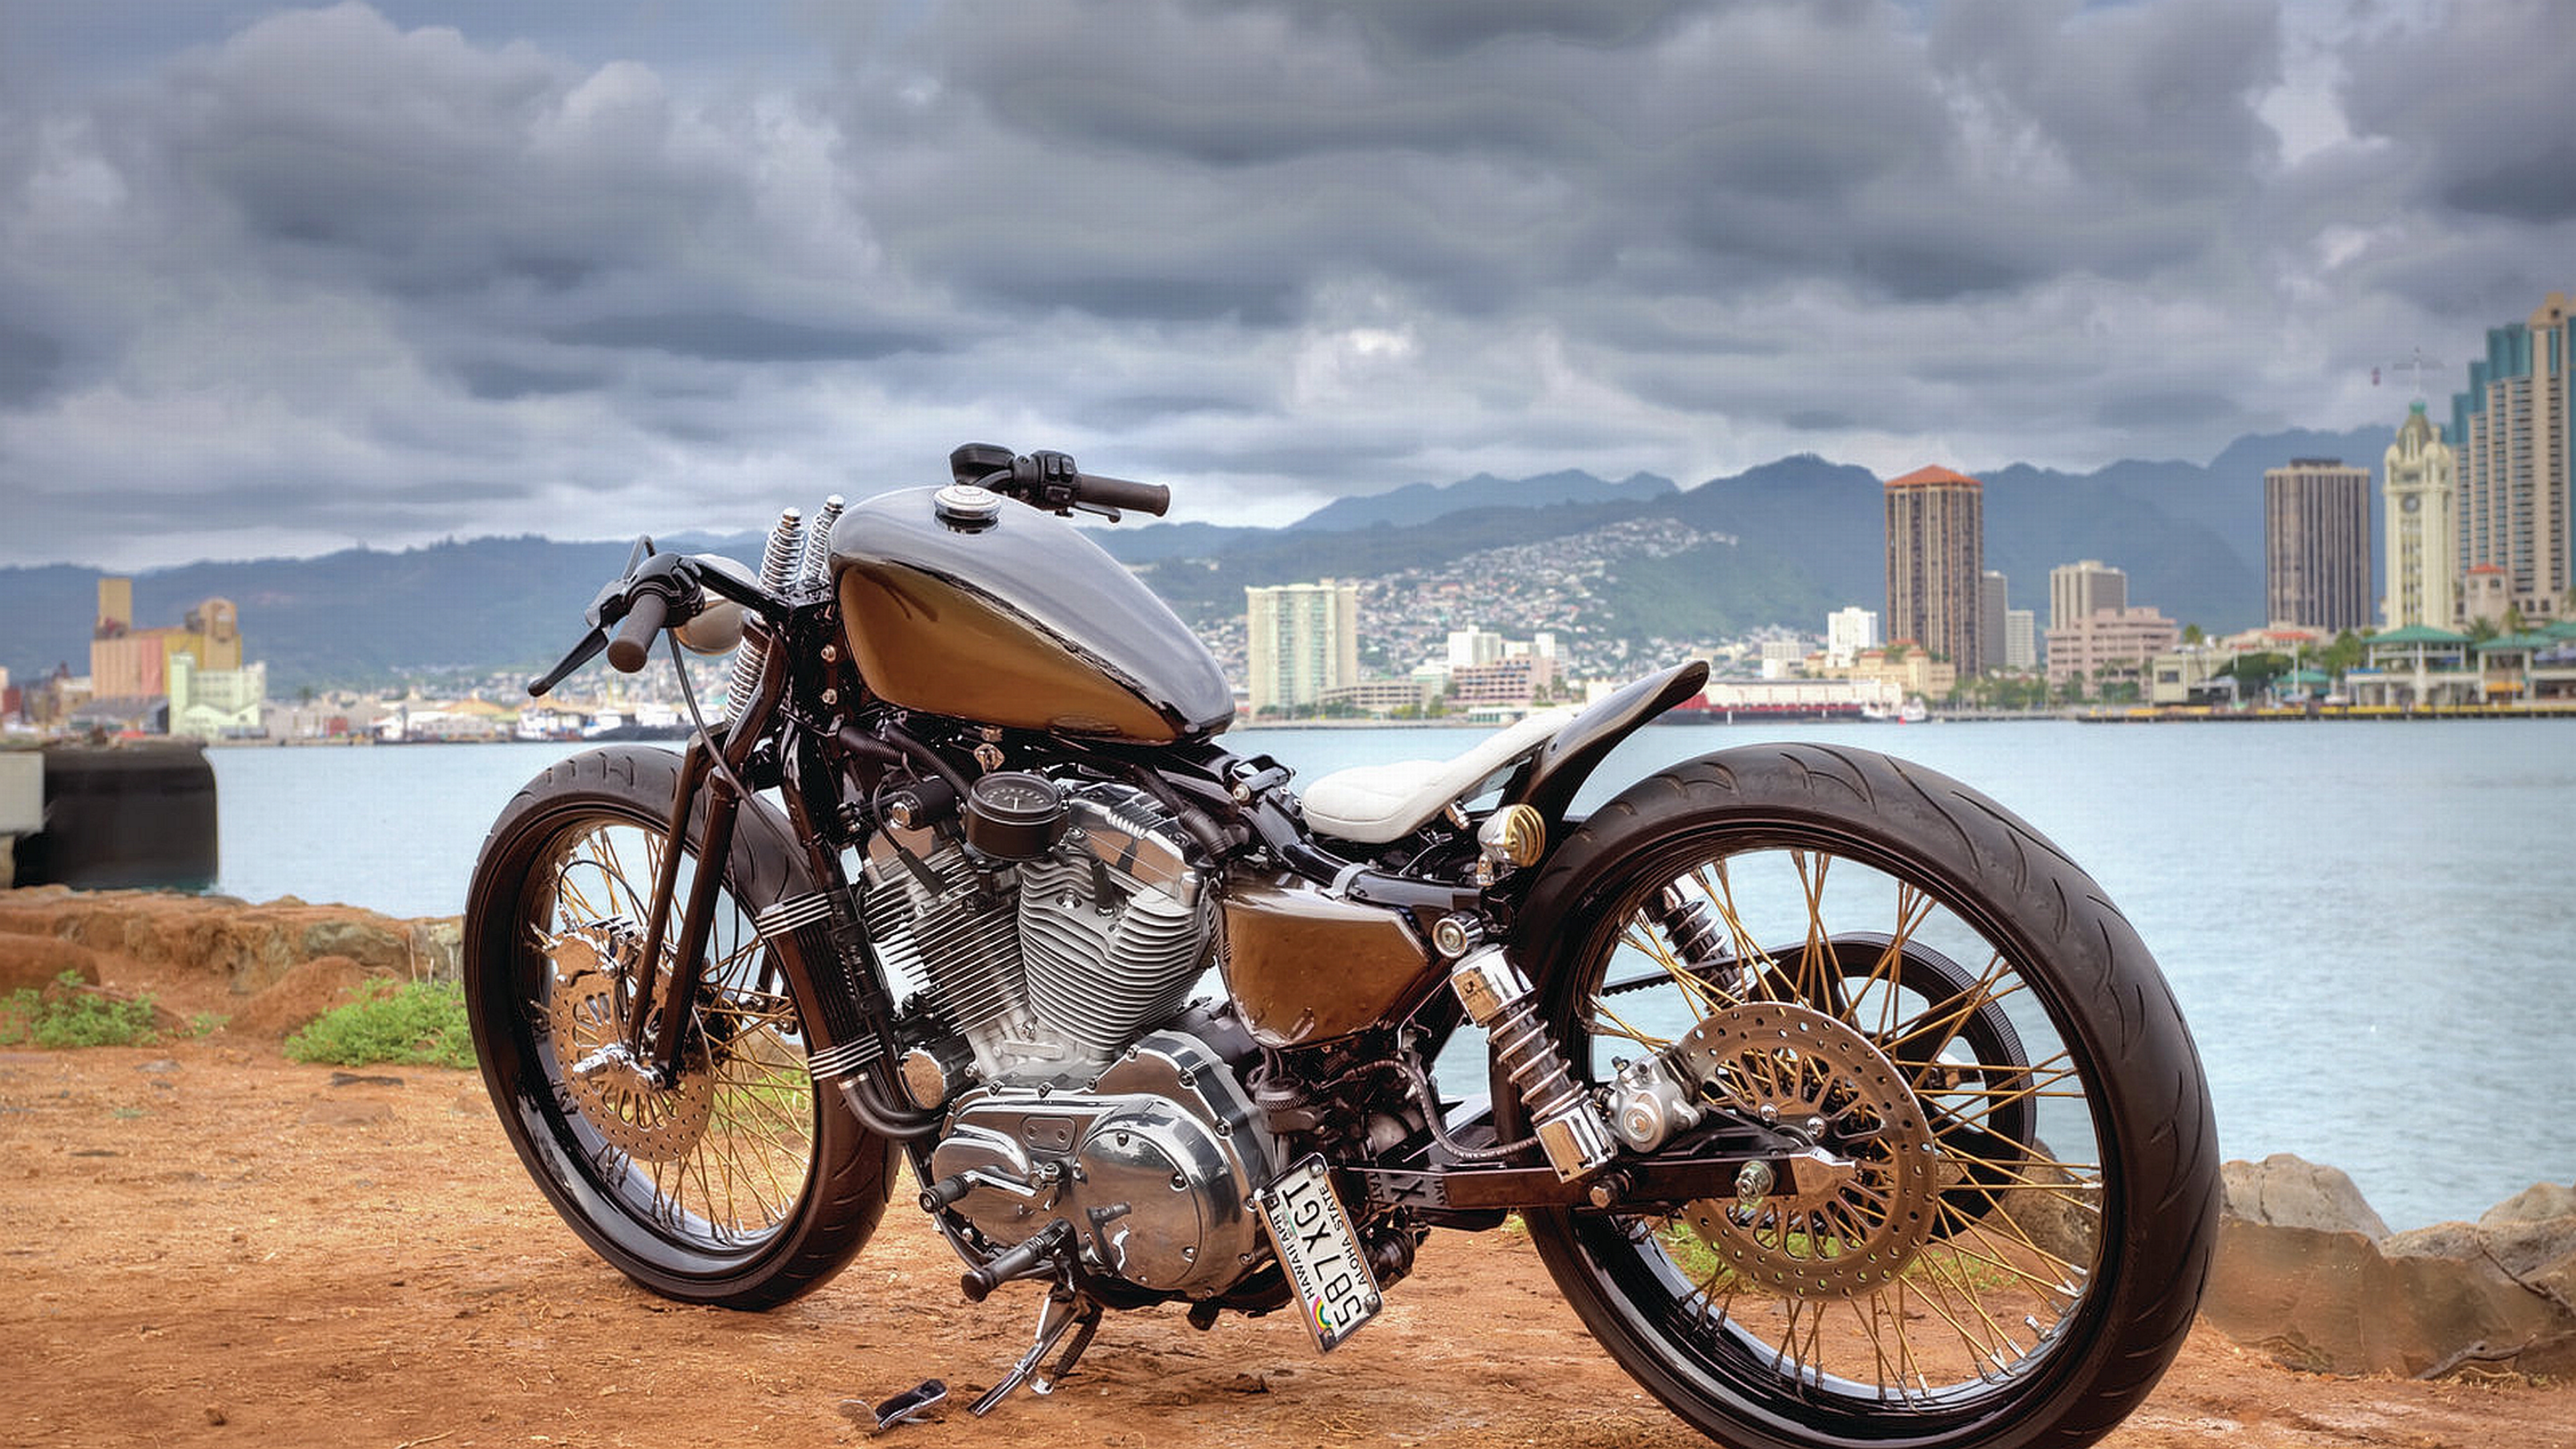 Harley Davidson Puter Wallpaper Desktop Background